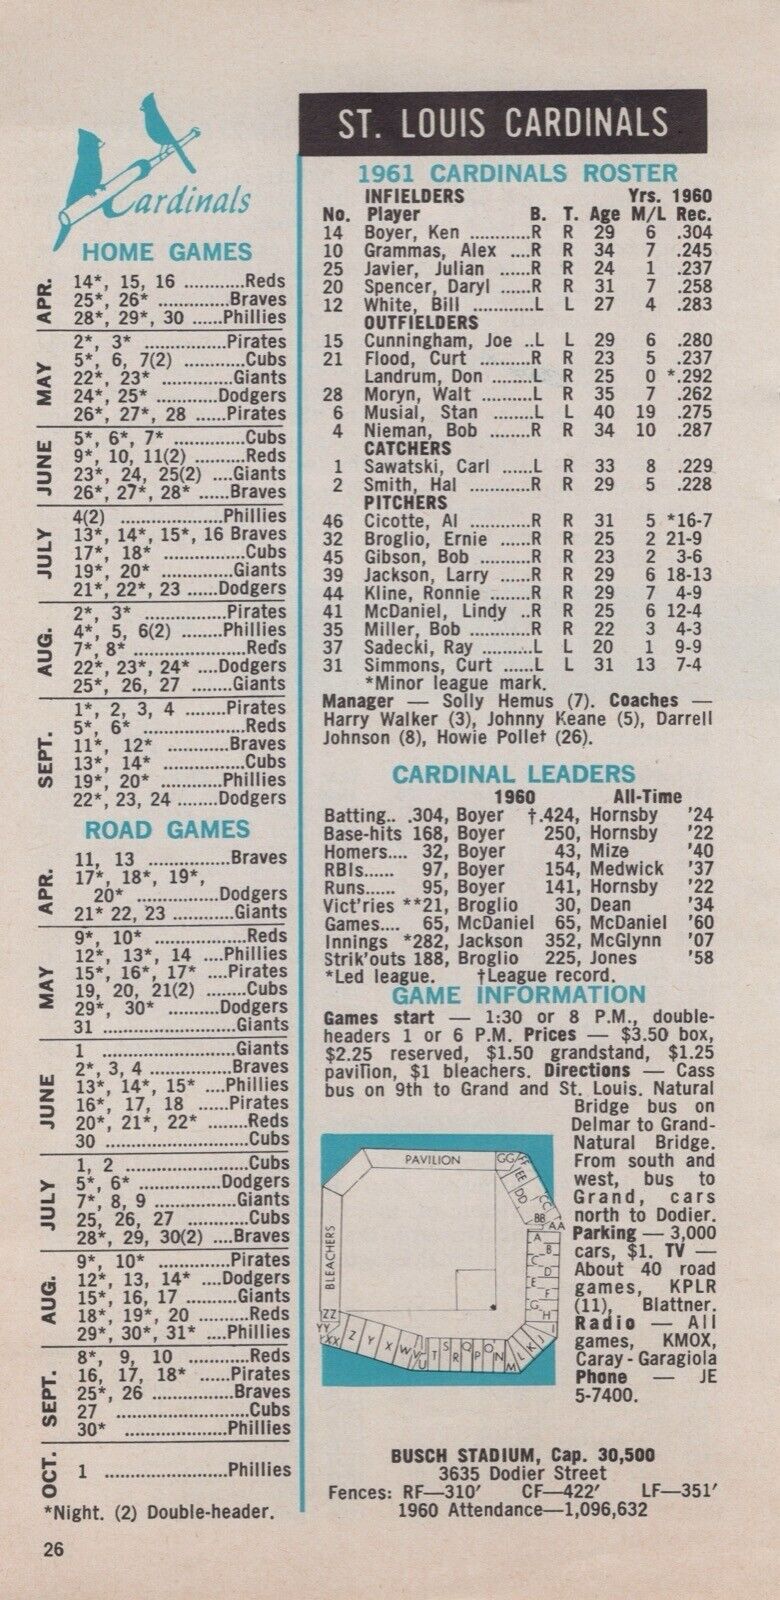 1961 St. Louis Cardinals Busch Stadium Schedule Roster MLB Baseball 1960s 4x7